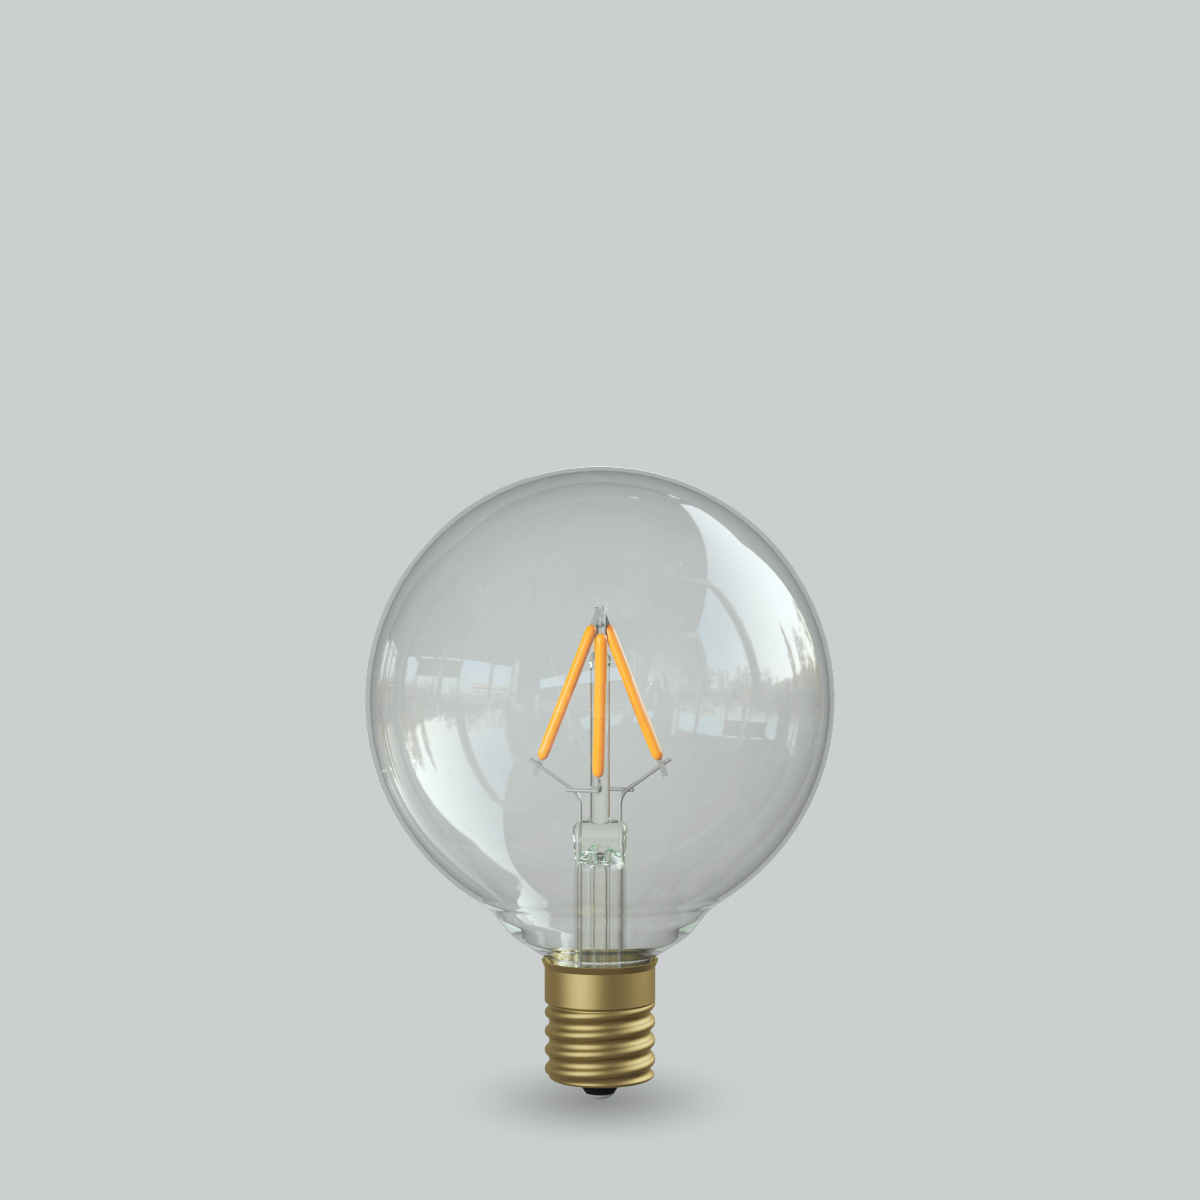 フィラメントLED電球「Siphon」| 製品ラインナップOnly One